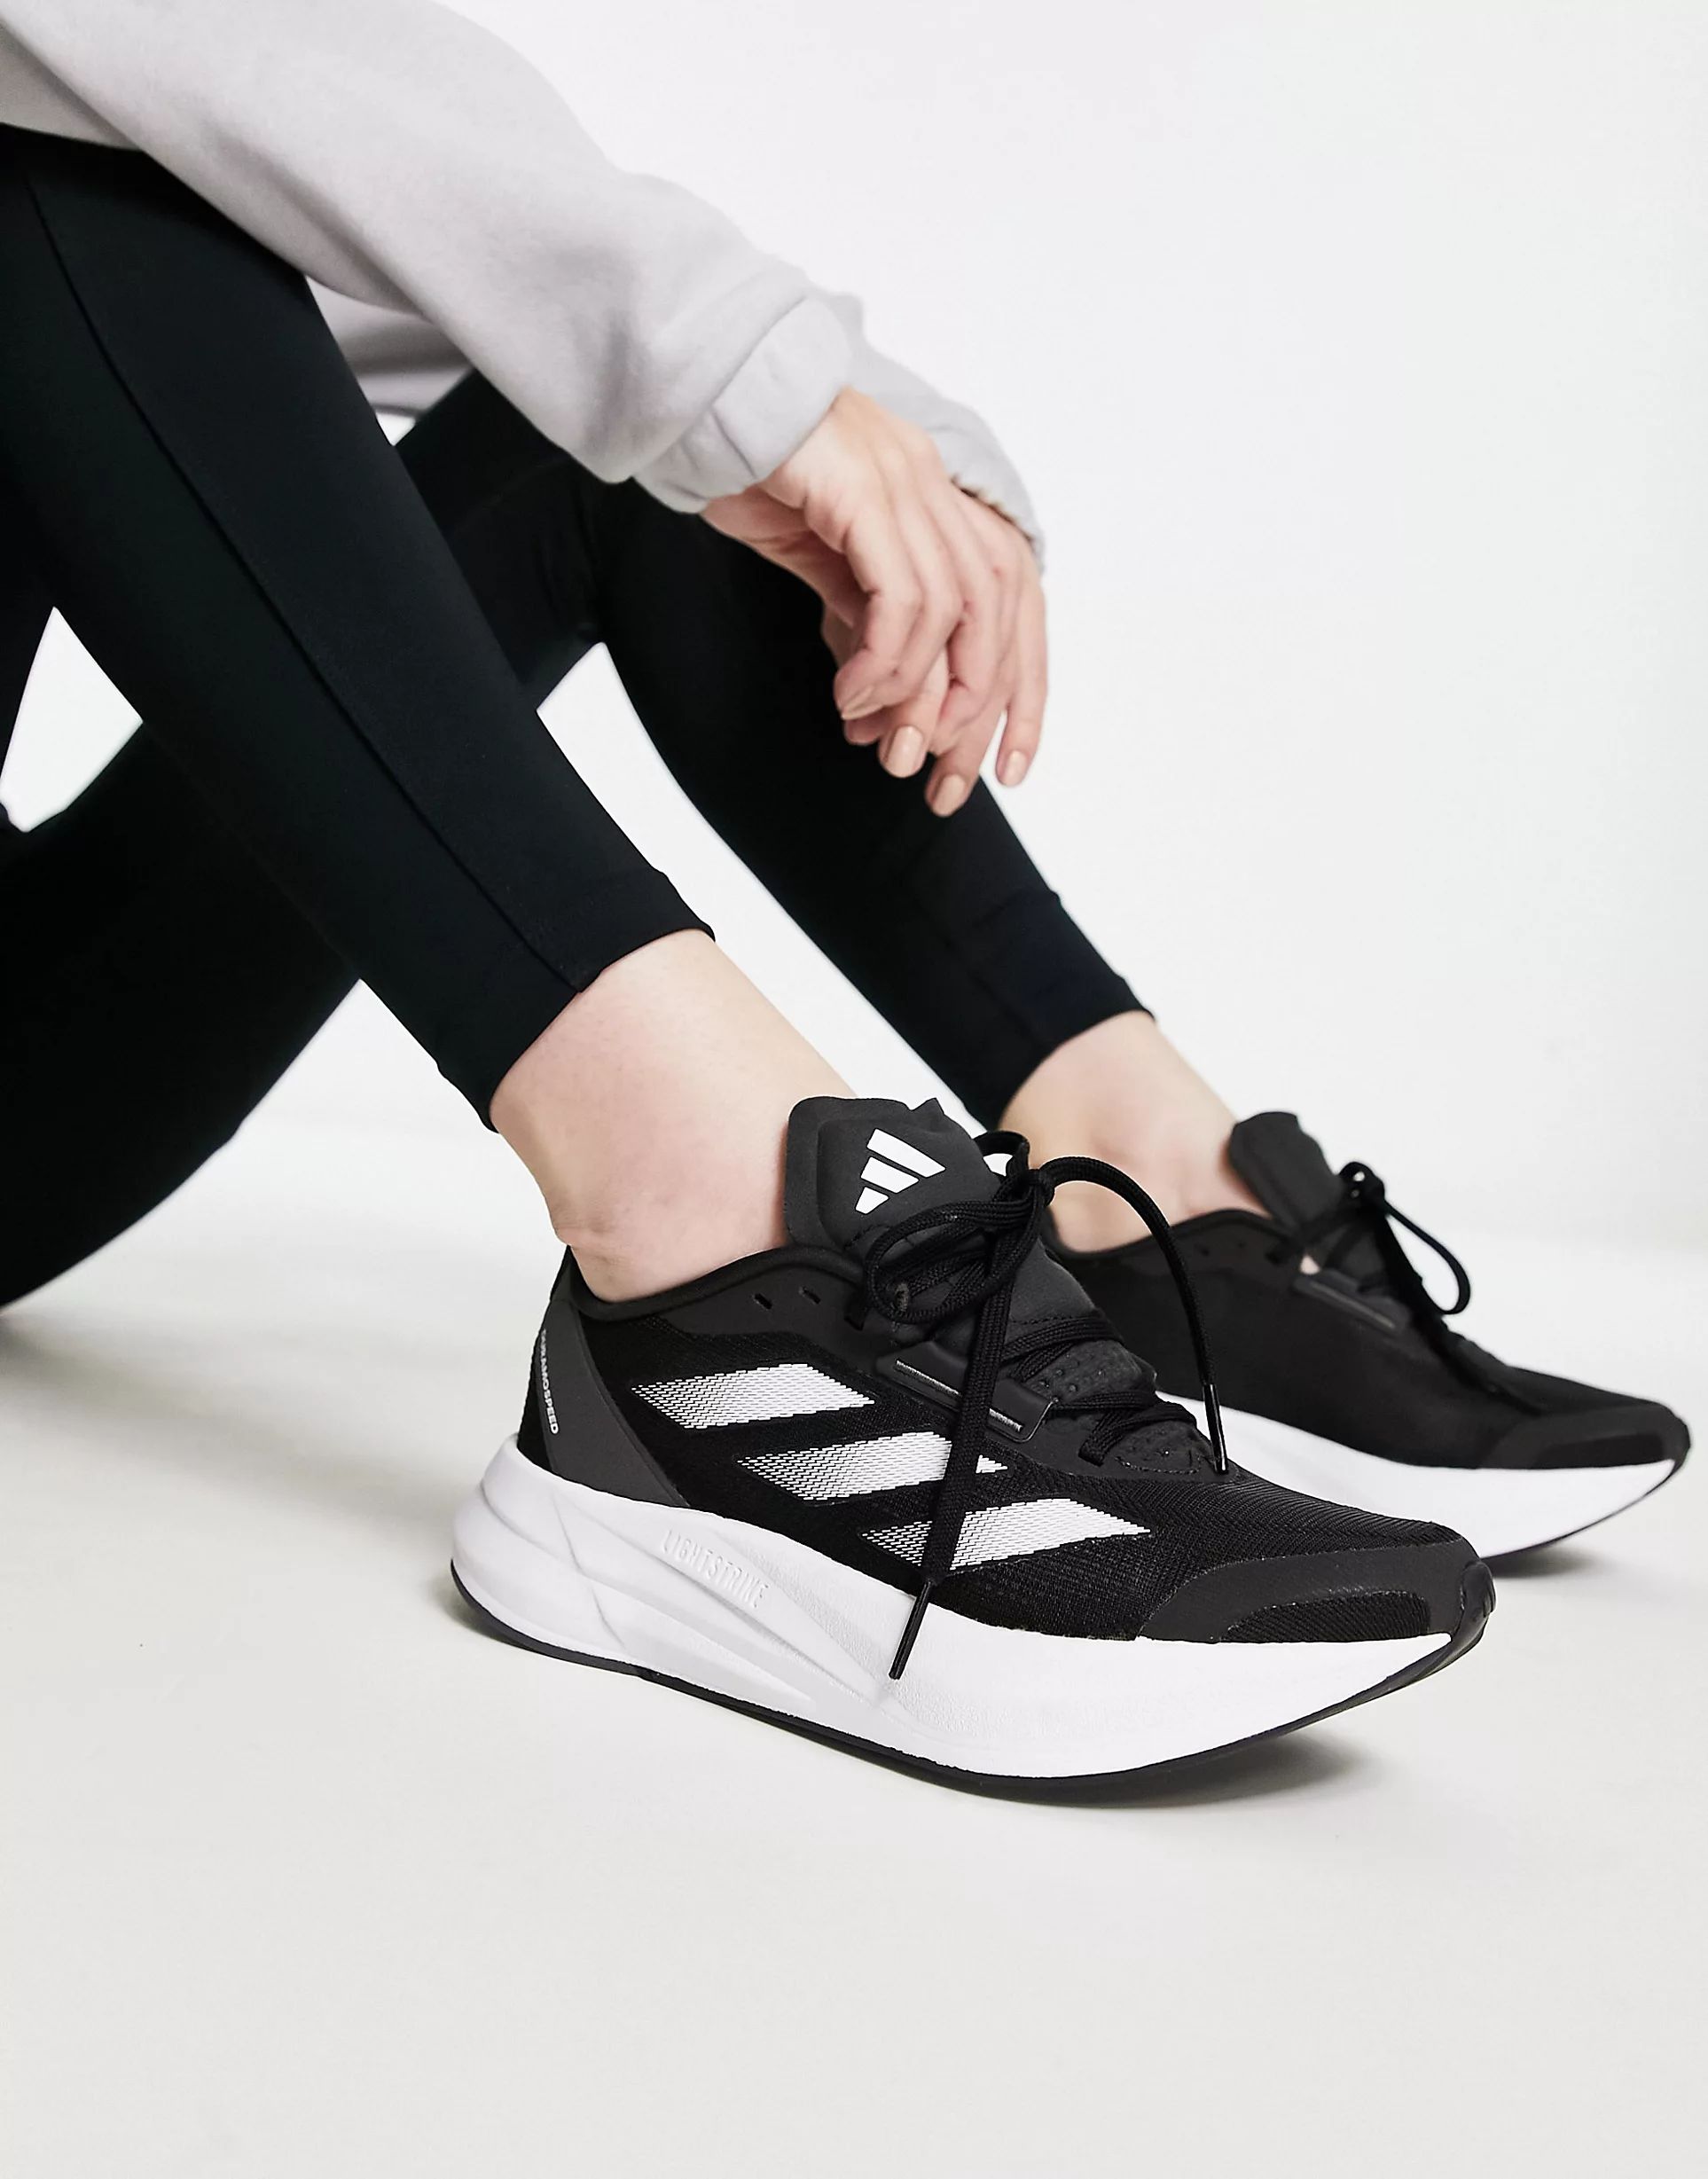 adidas - Hardlopen - Duramo Speed - Sneakers in zwart en wit | ASOS (Global)